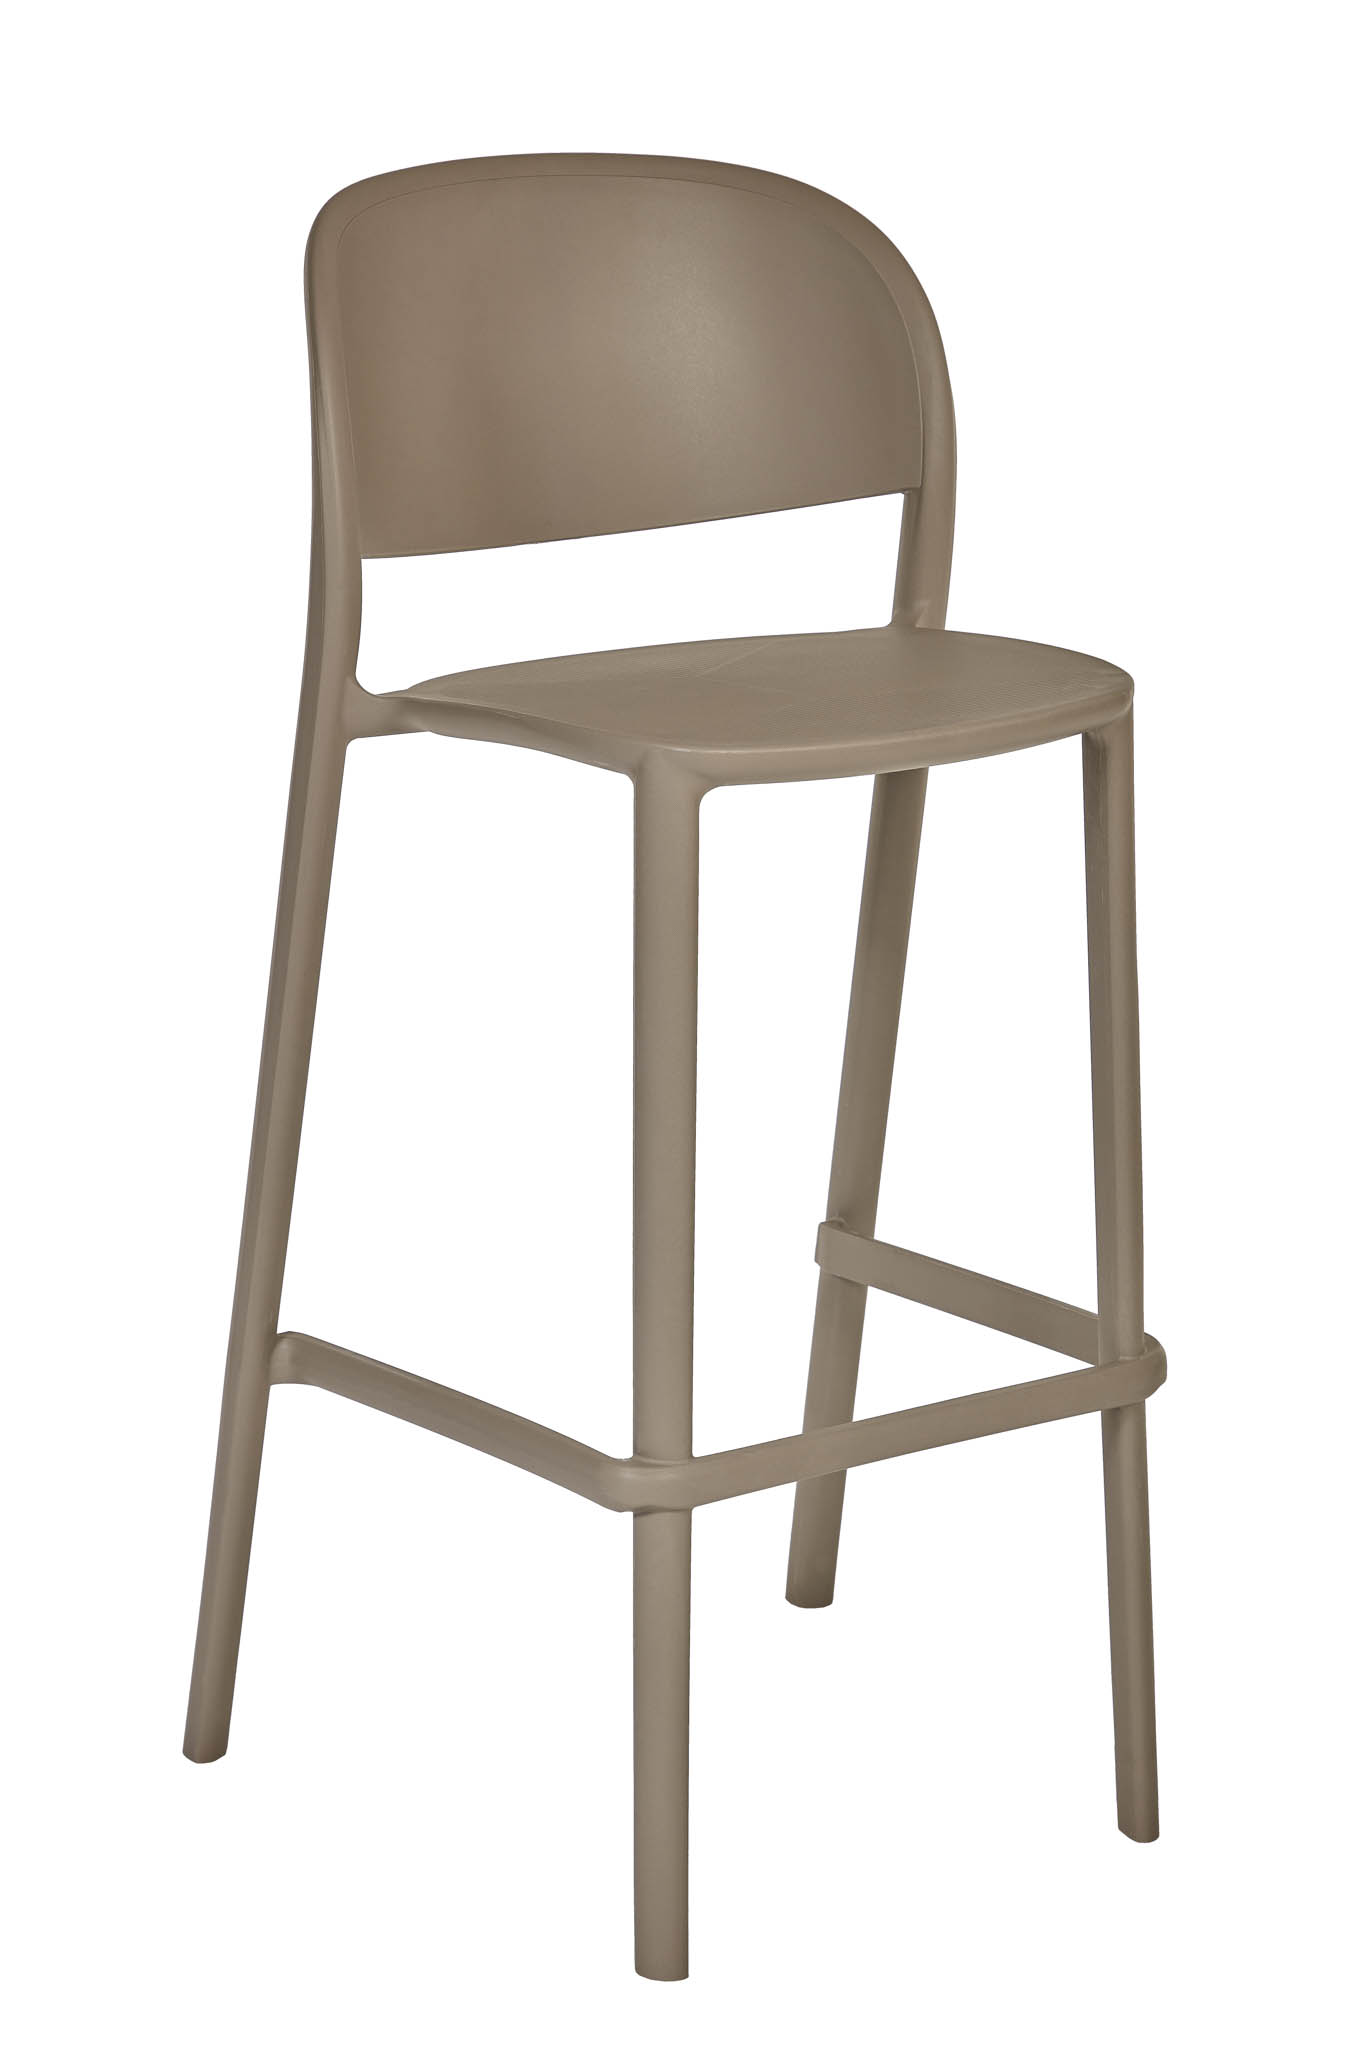 AD hotelska oprema Barska stolica 01 - Taupe boje slika proizvoda